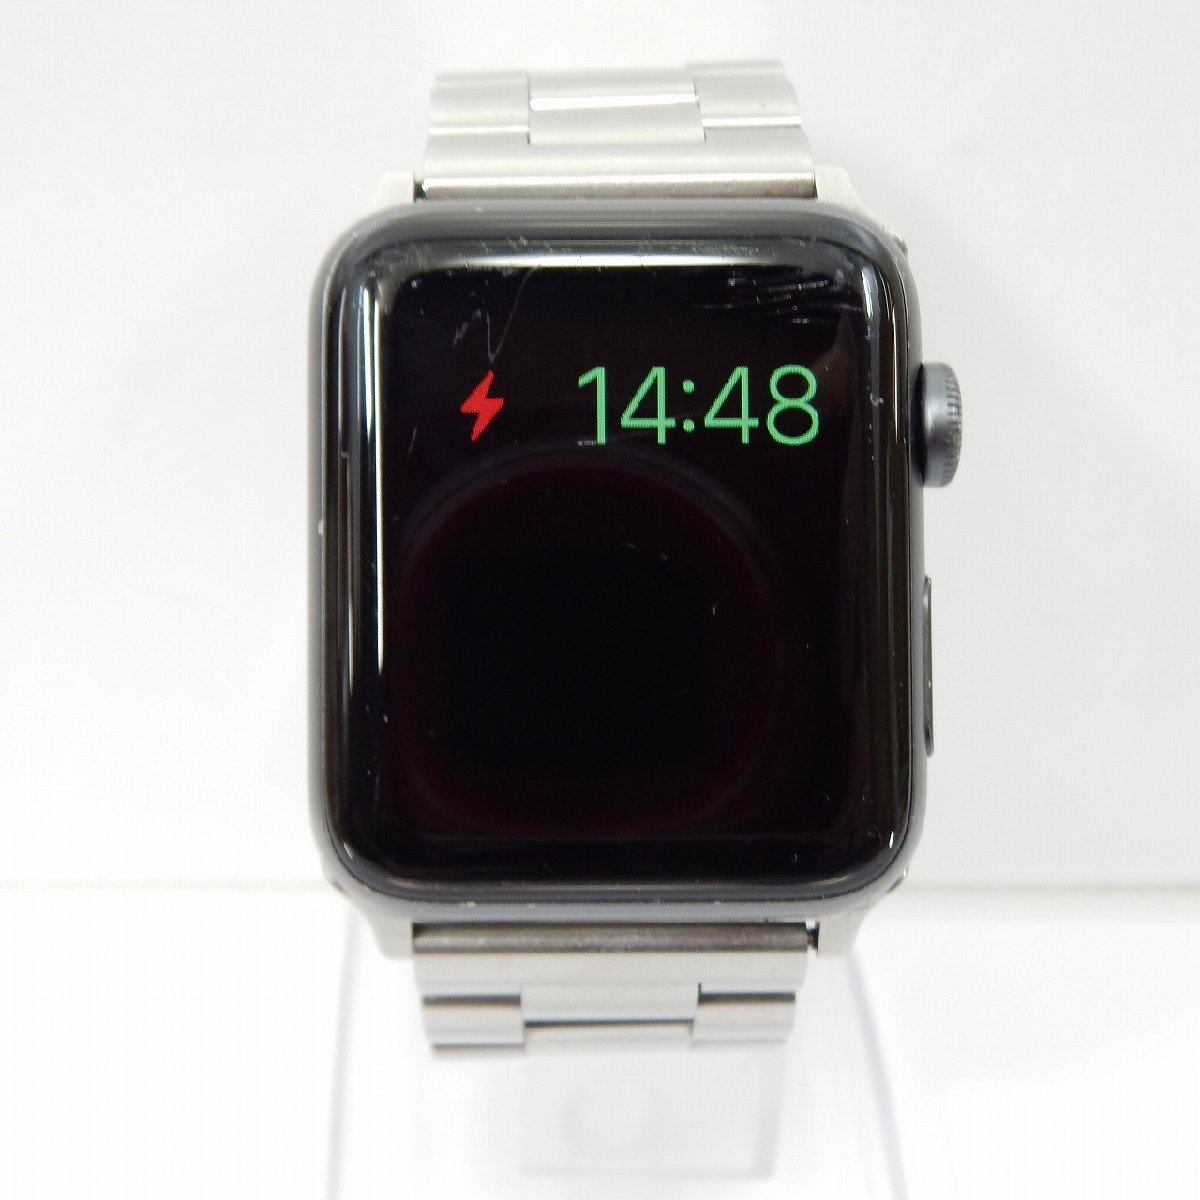 PC/タブレット PC周辺機器 Apple Watch 3 42mmの値段と価格推移は？｜969件の売買情報を集計した 